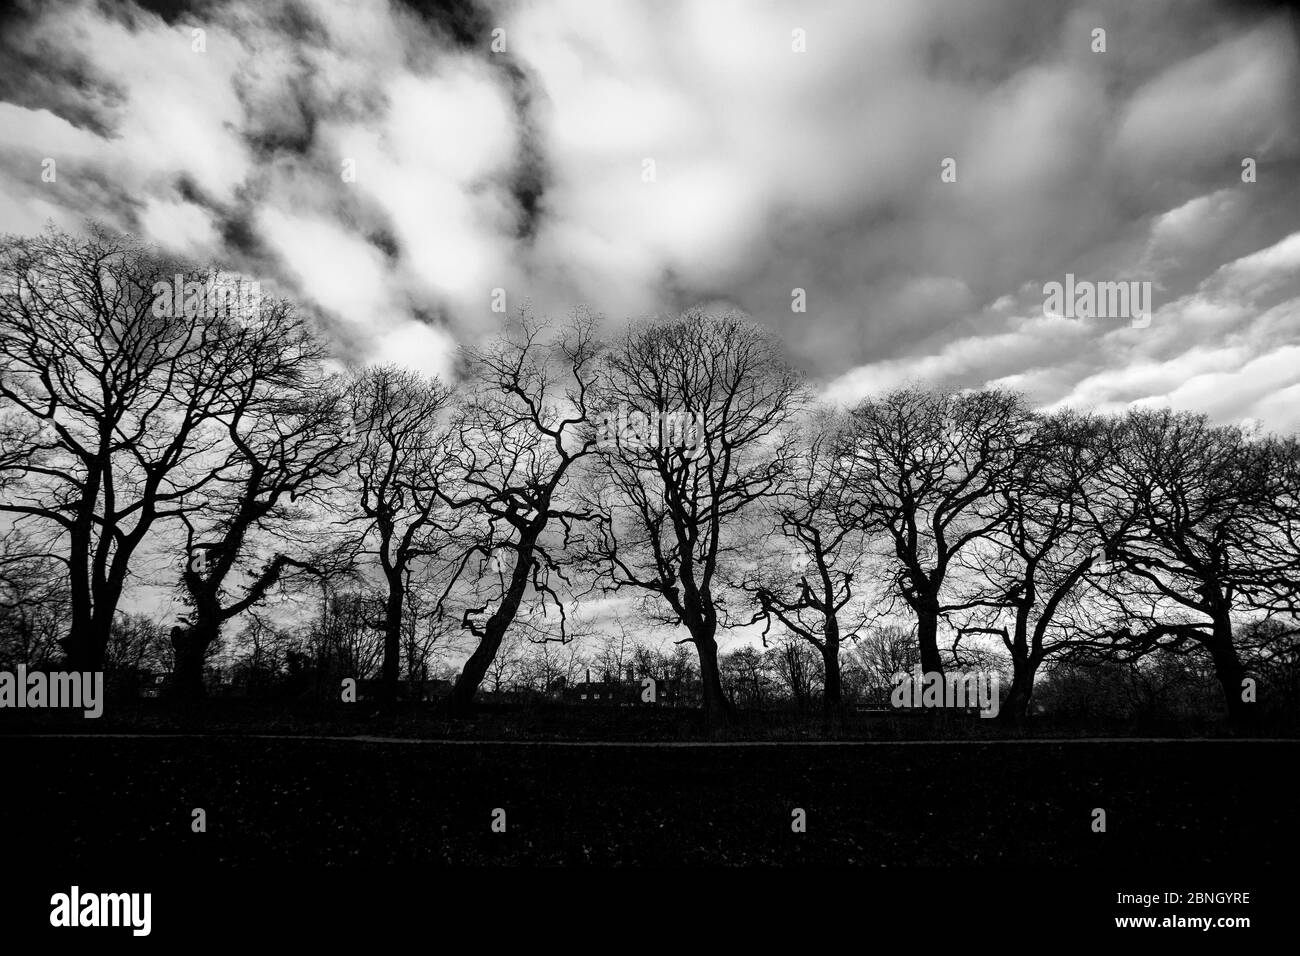 Hampstead heath london Banque d'images noir et blanc - Alamy